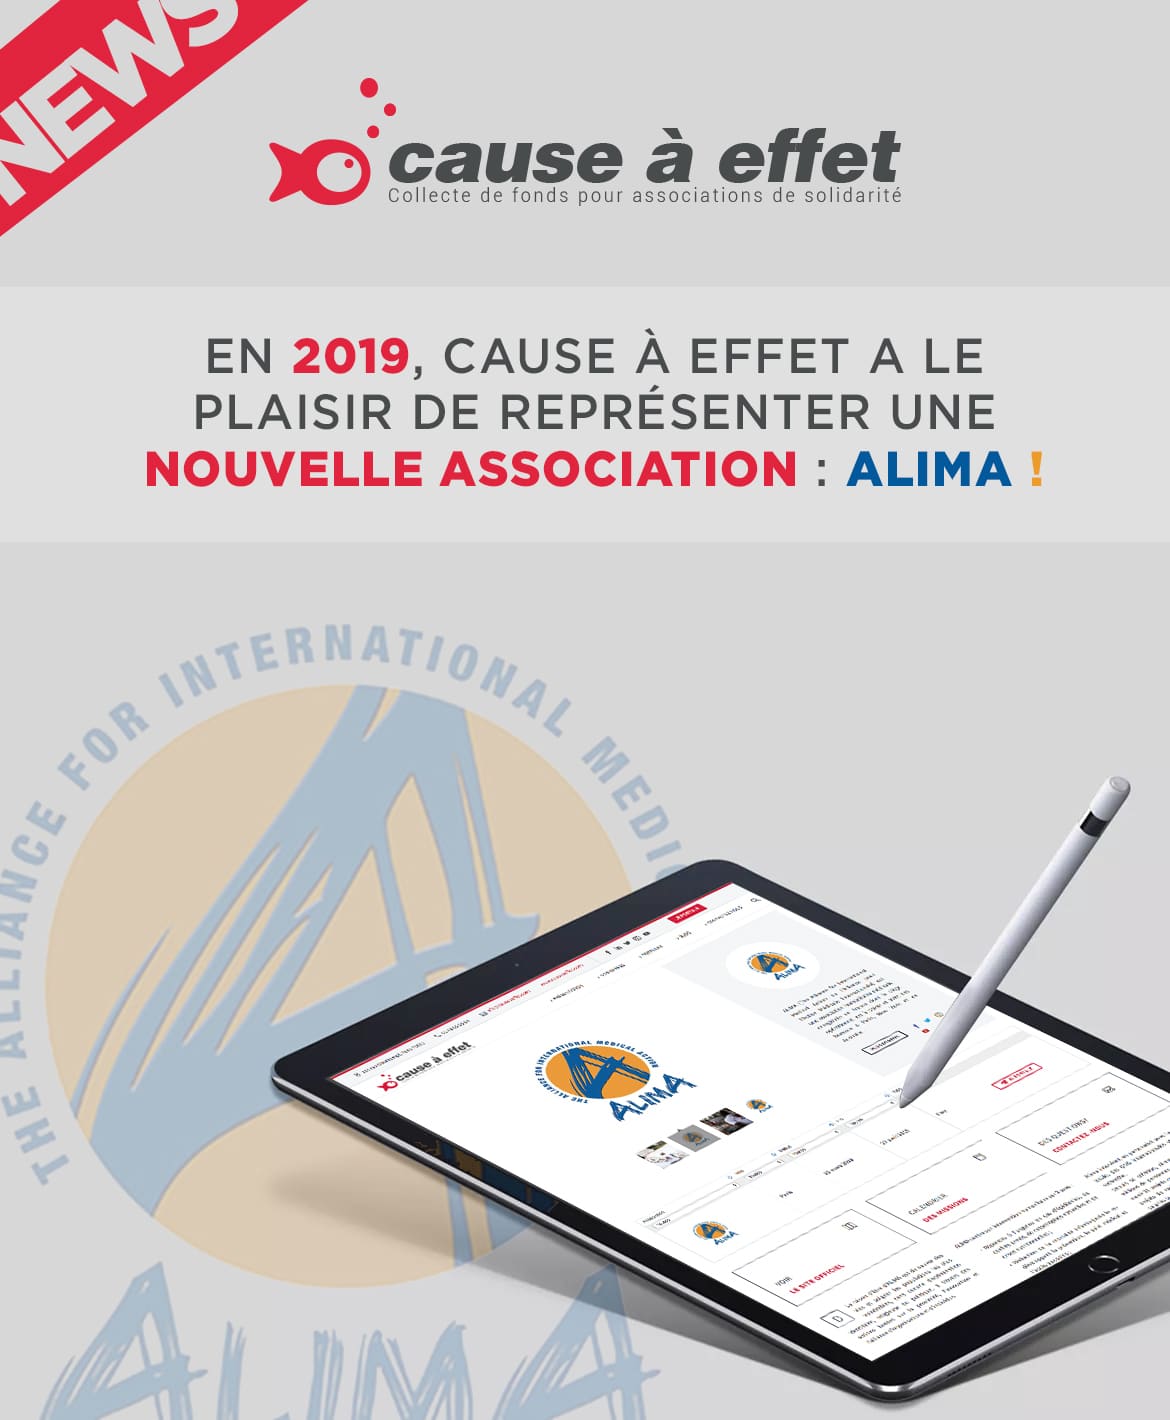 2019, Cause a Effet représente une nouvelle association : ALIMA